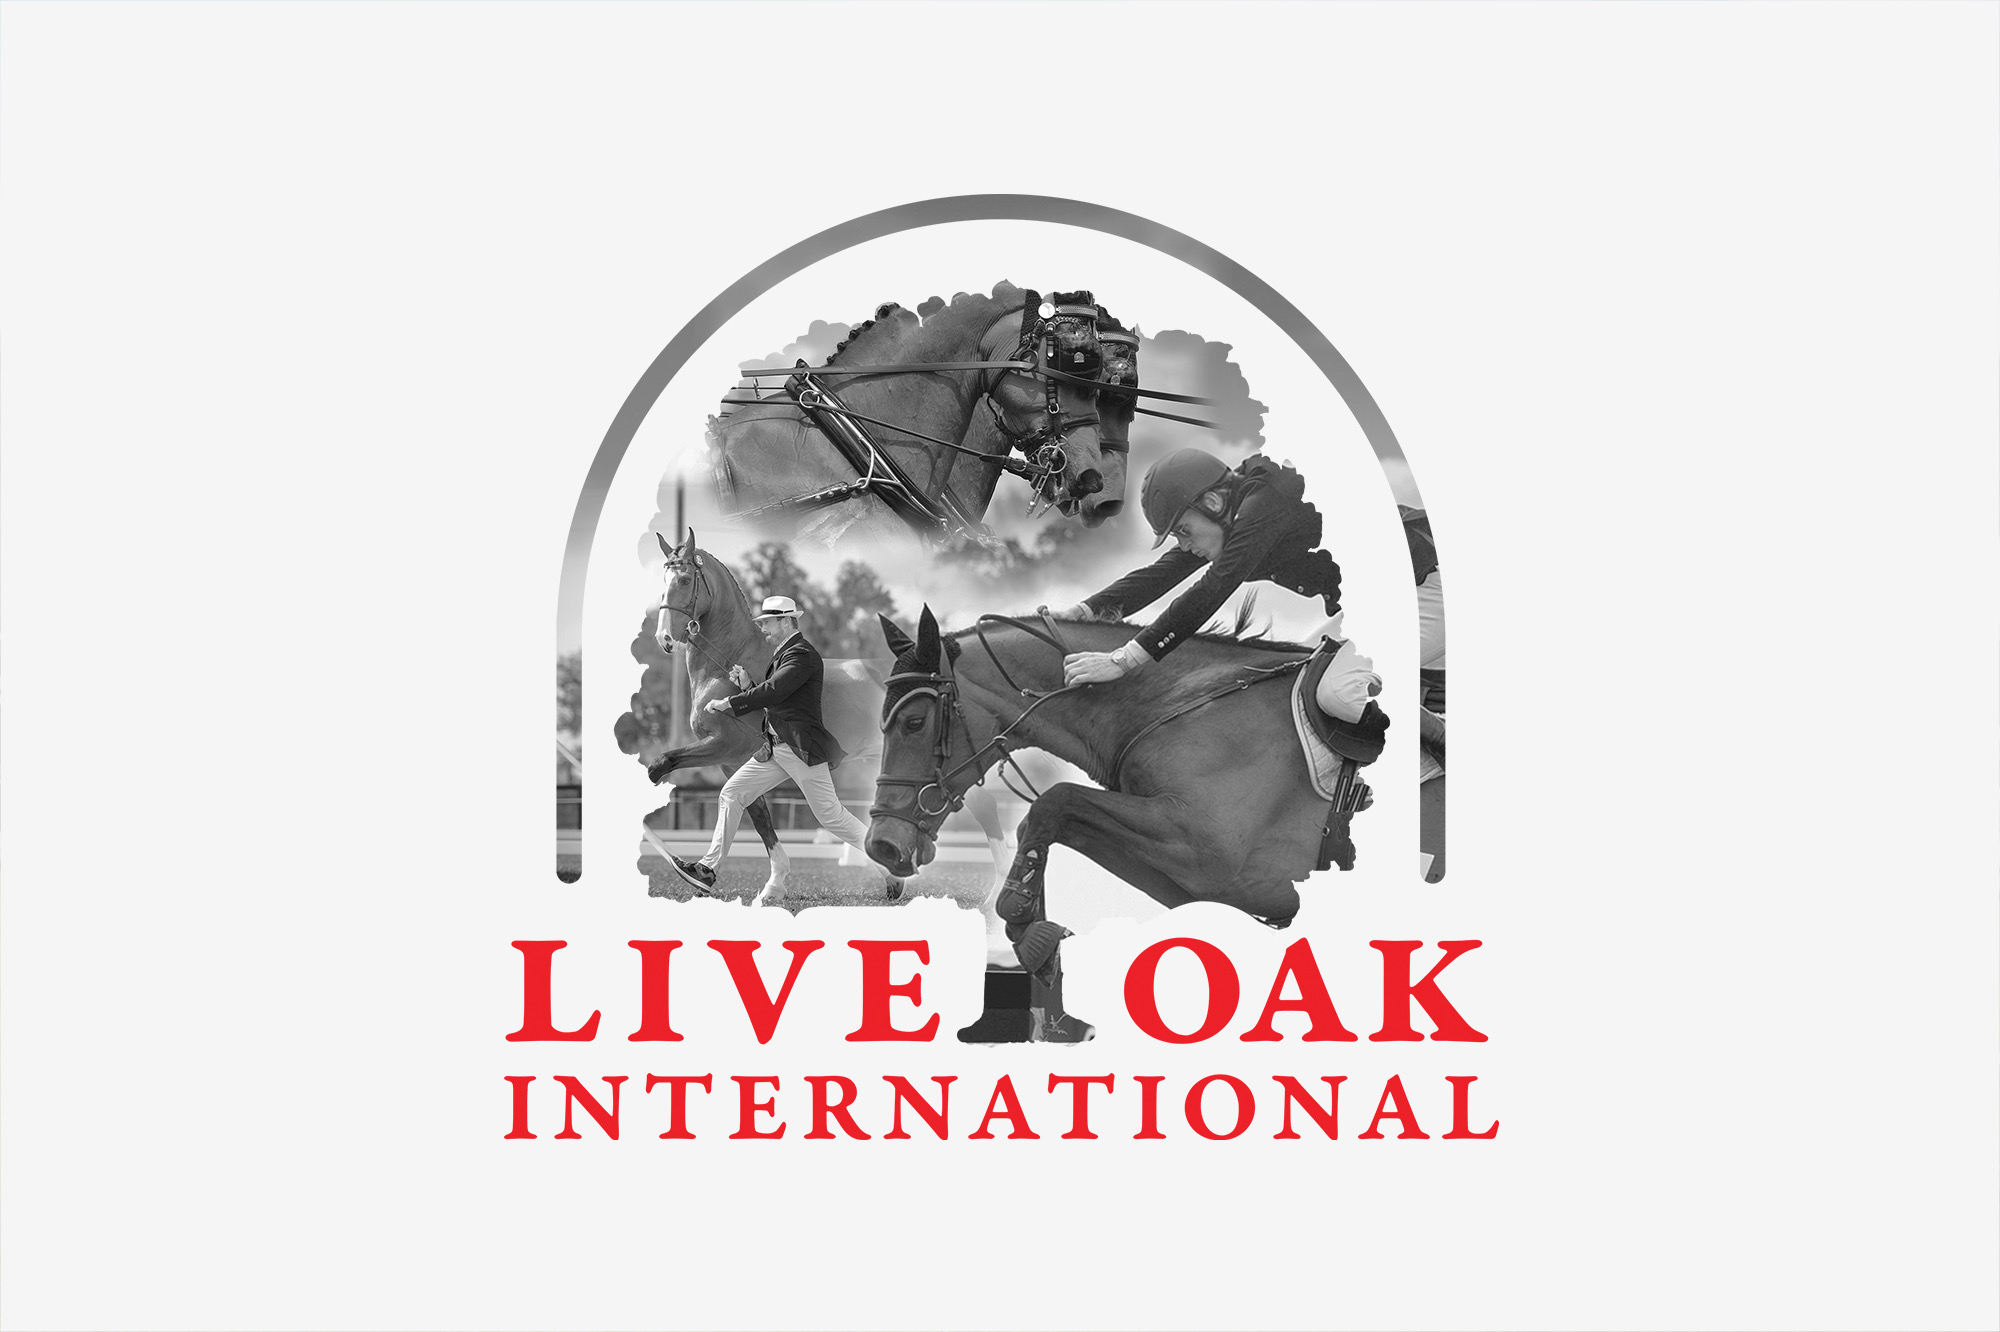 Live Oak International is back!!!  March 3-6, 2022